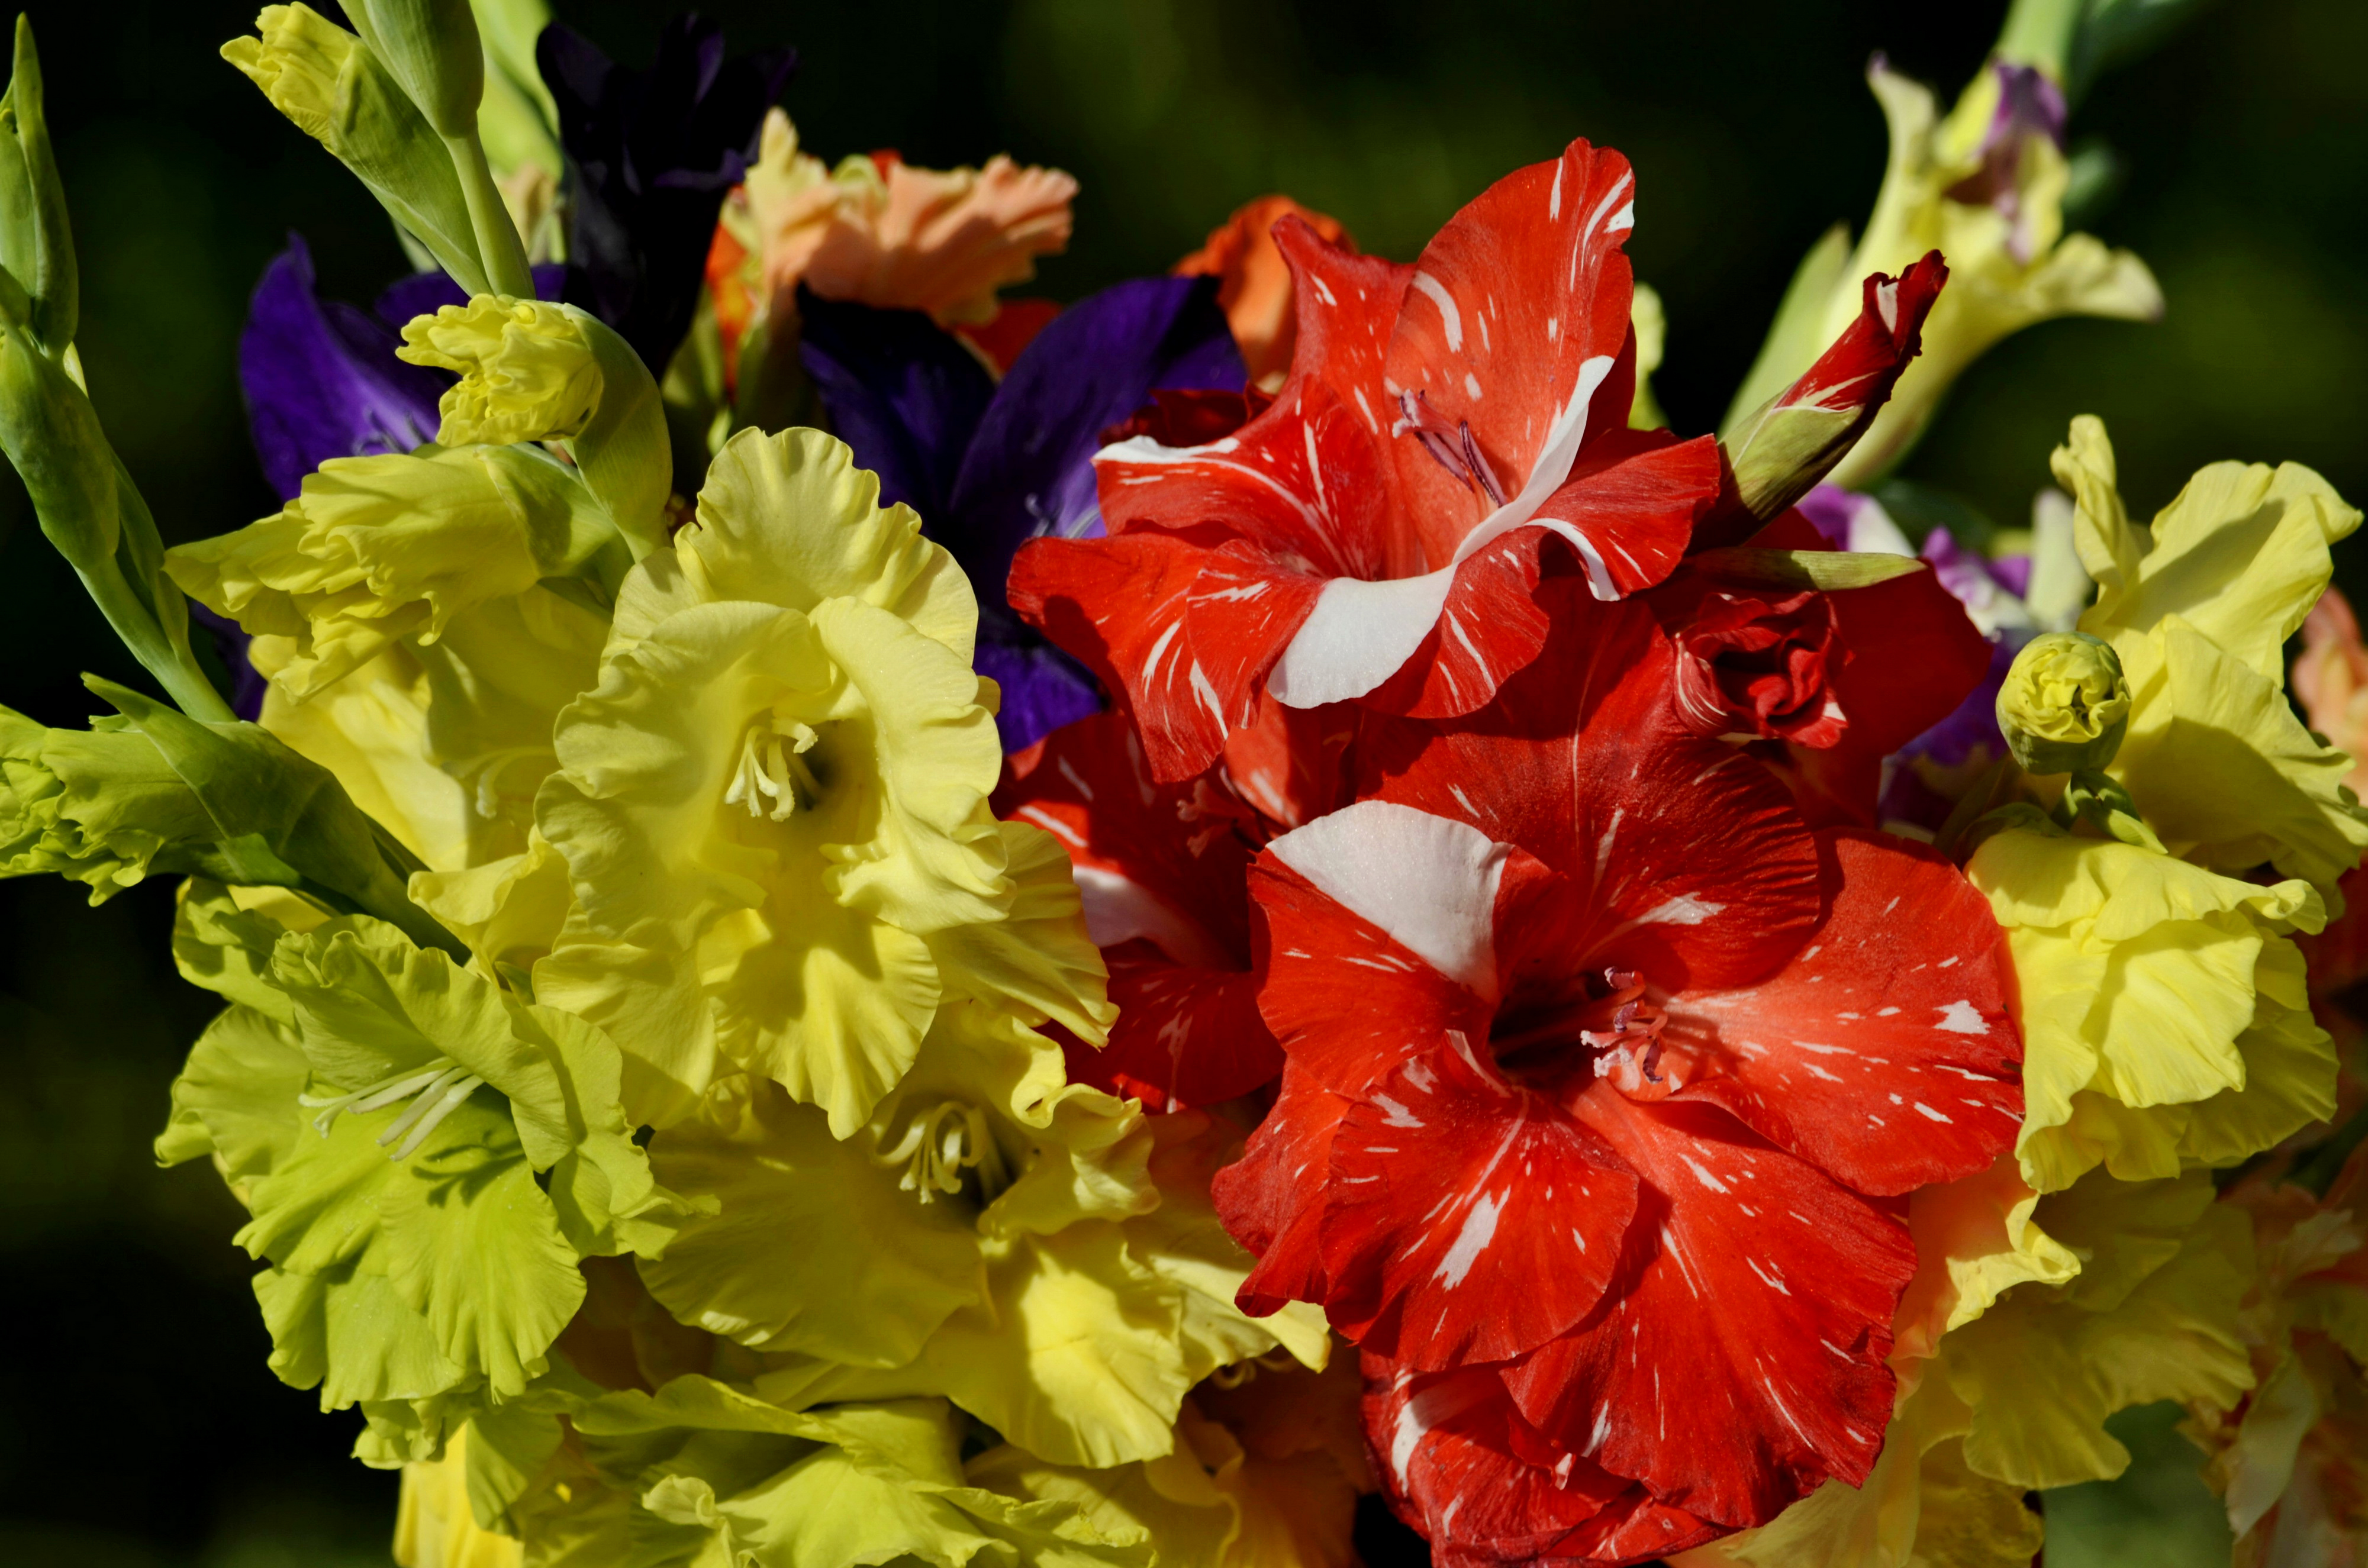 Фото Цветы Гладиолусы Крупным планом 4001x2650 цветок гладиолус вблизи